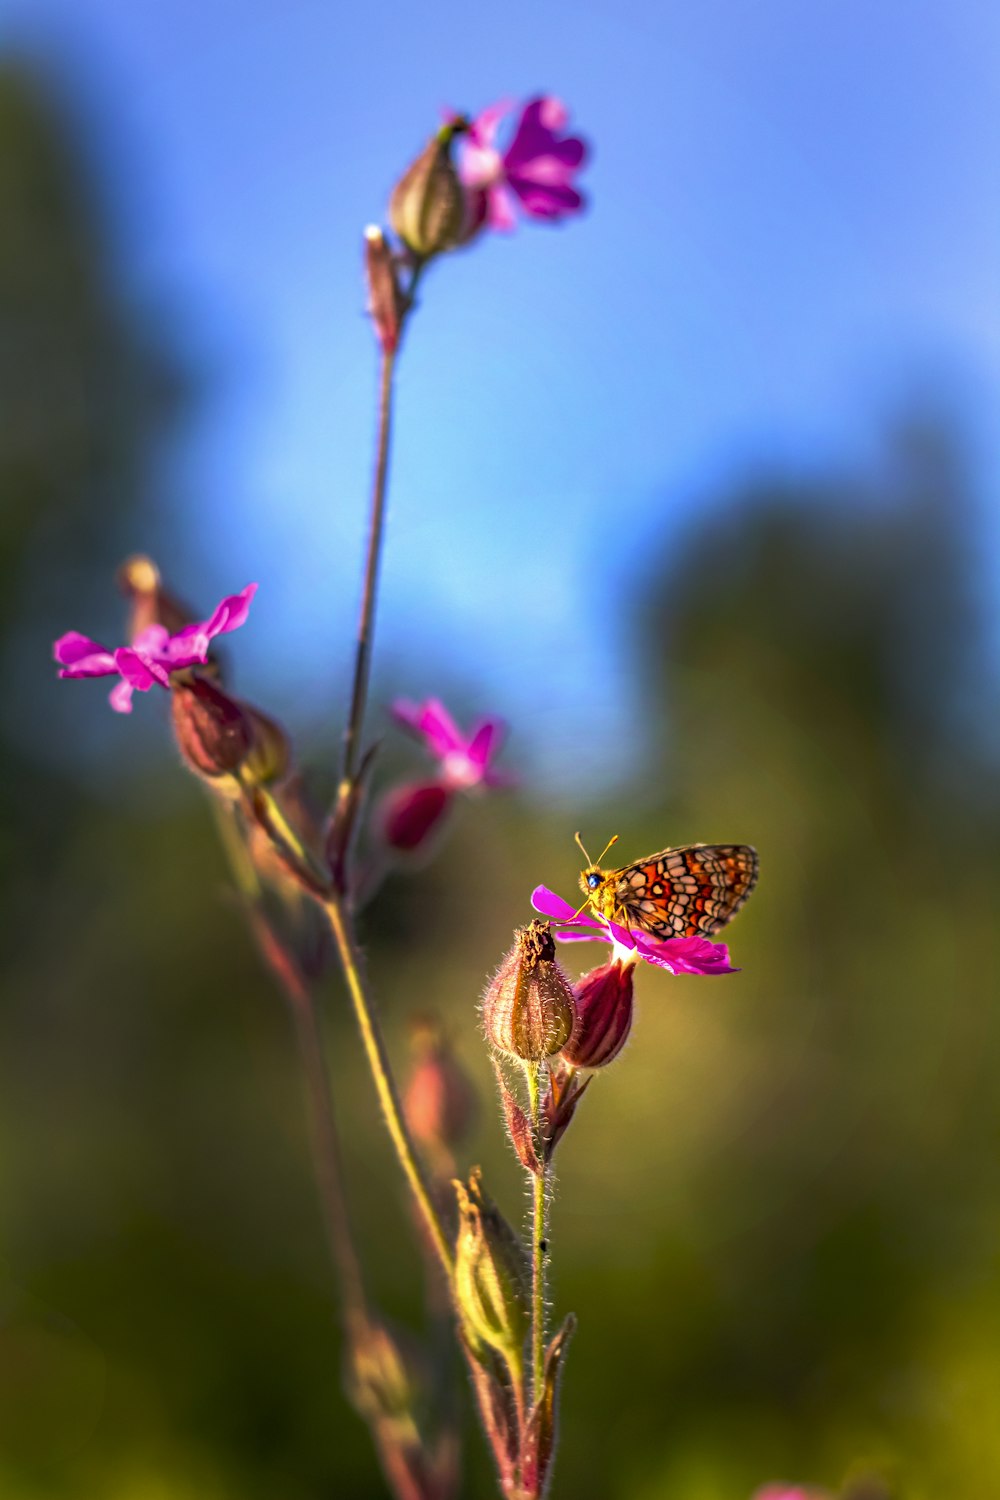 Brauner und schwarzer Schmetterling sitzt tagsüber auf rosa Blume in Nahaufnahmen